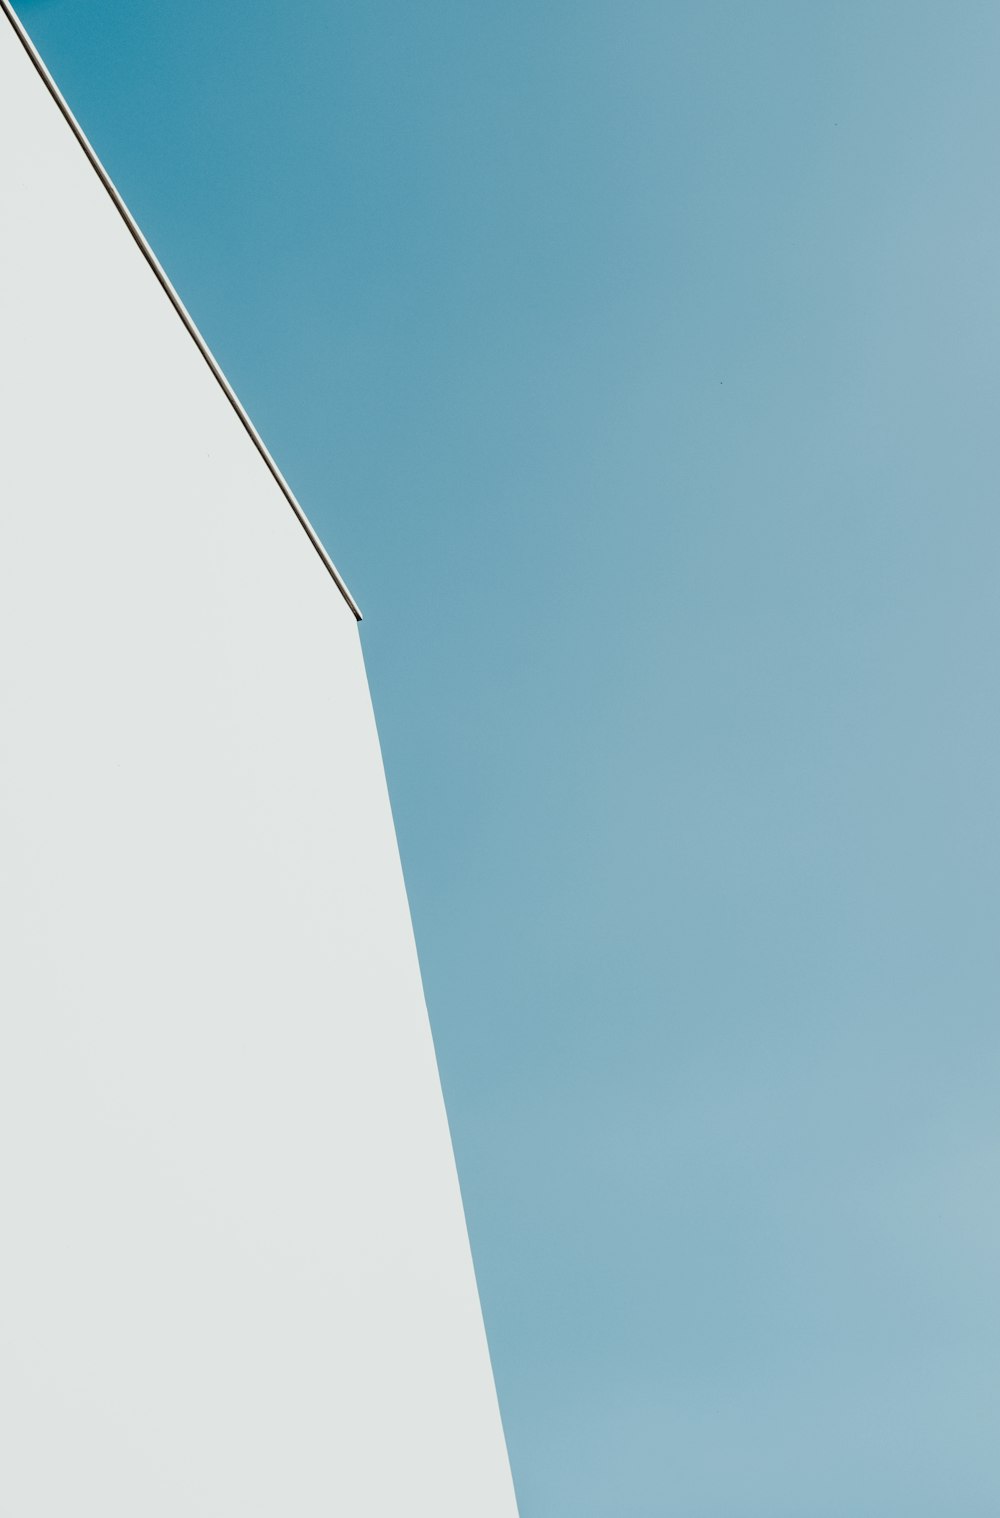 Edificio de hormigón blanco bajo el cielo verde azulado